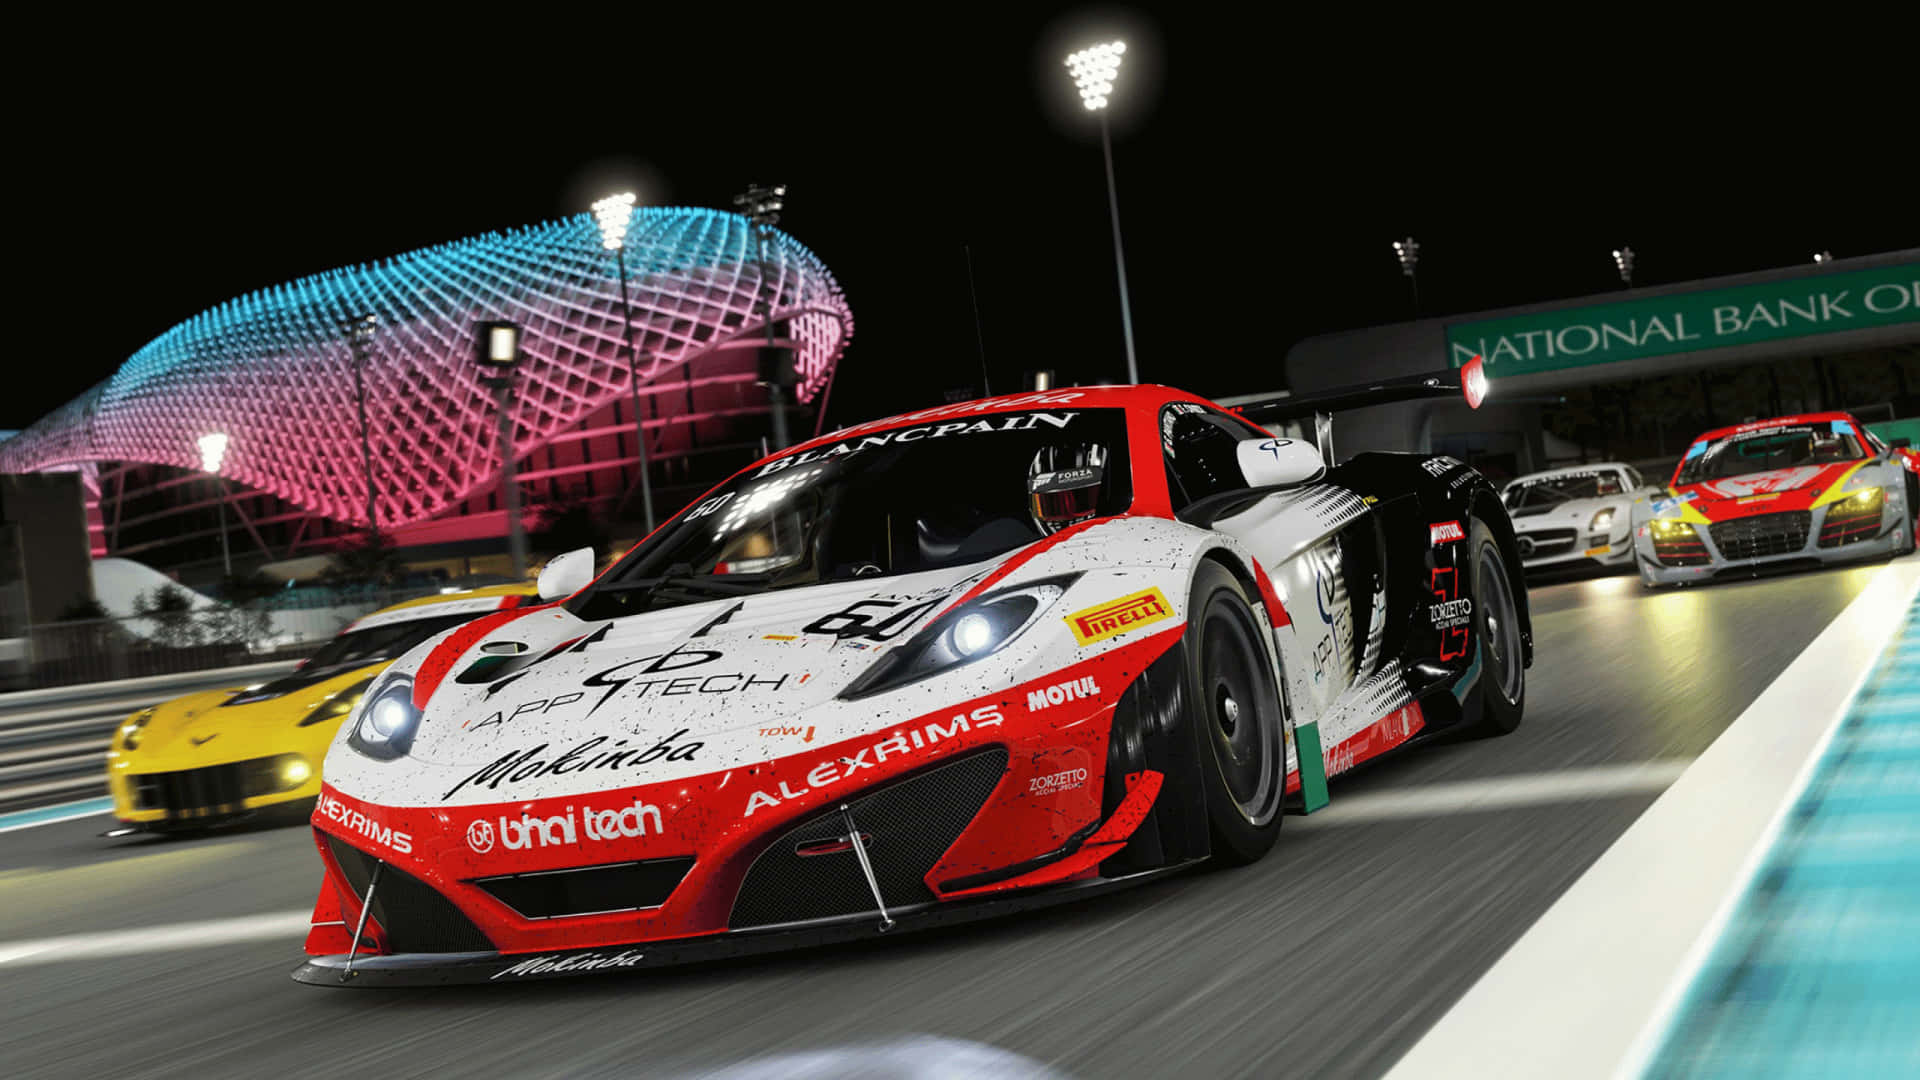 Preparati!sali A Bordo E Corri Con Forza Motorsport 7.